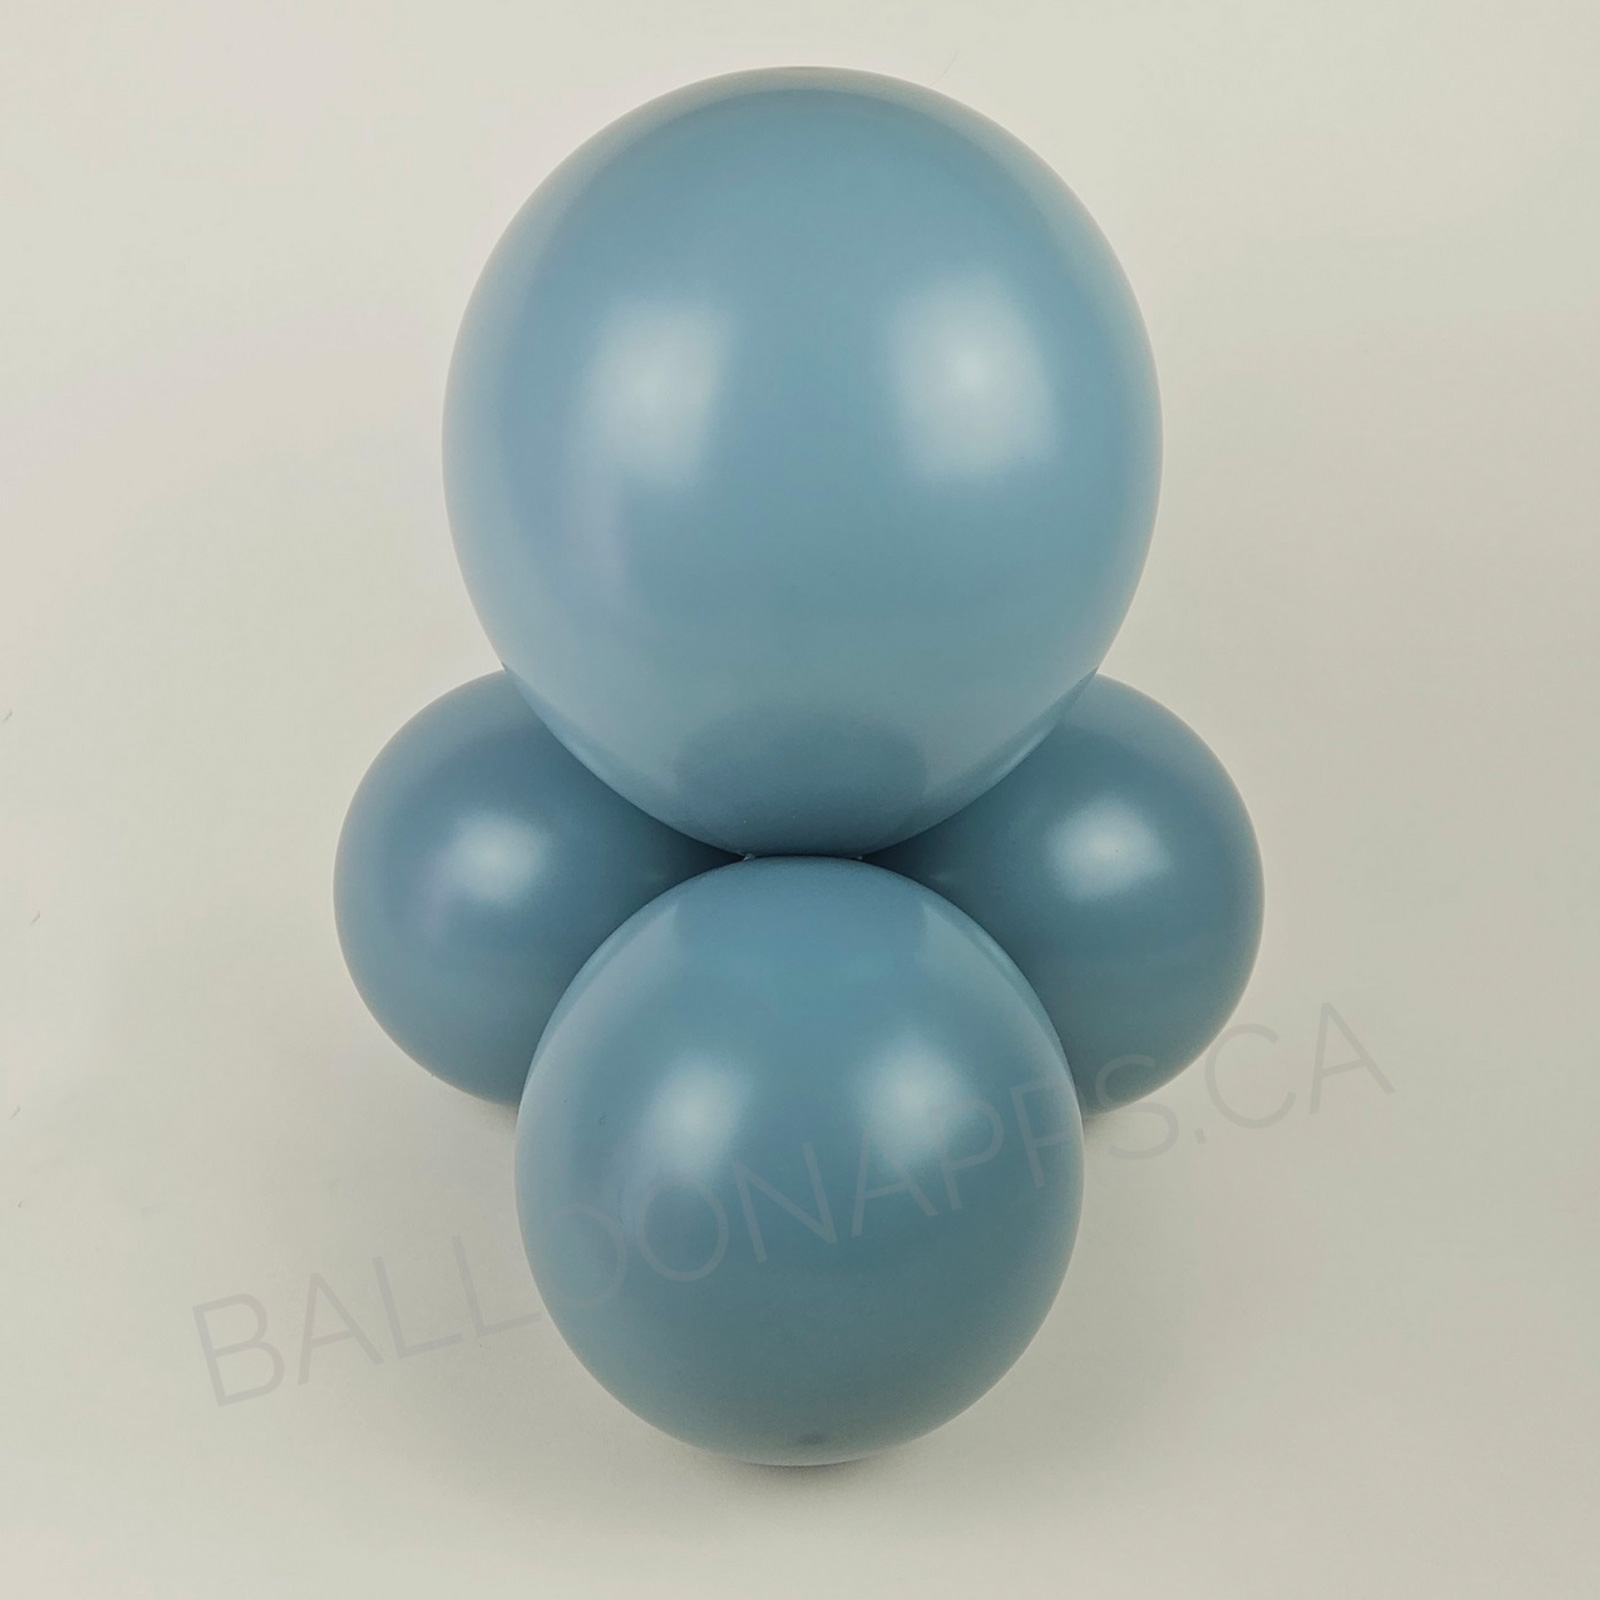 balloon texture Sempertex  260 Pastel Dusk Blue Latex balloons